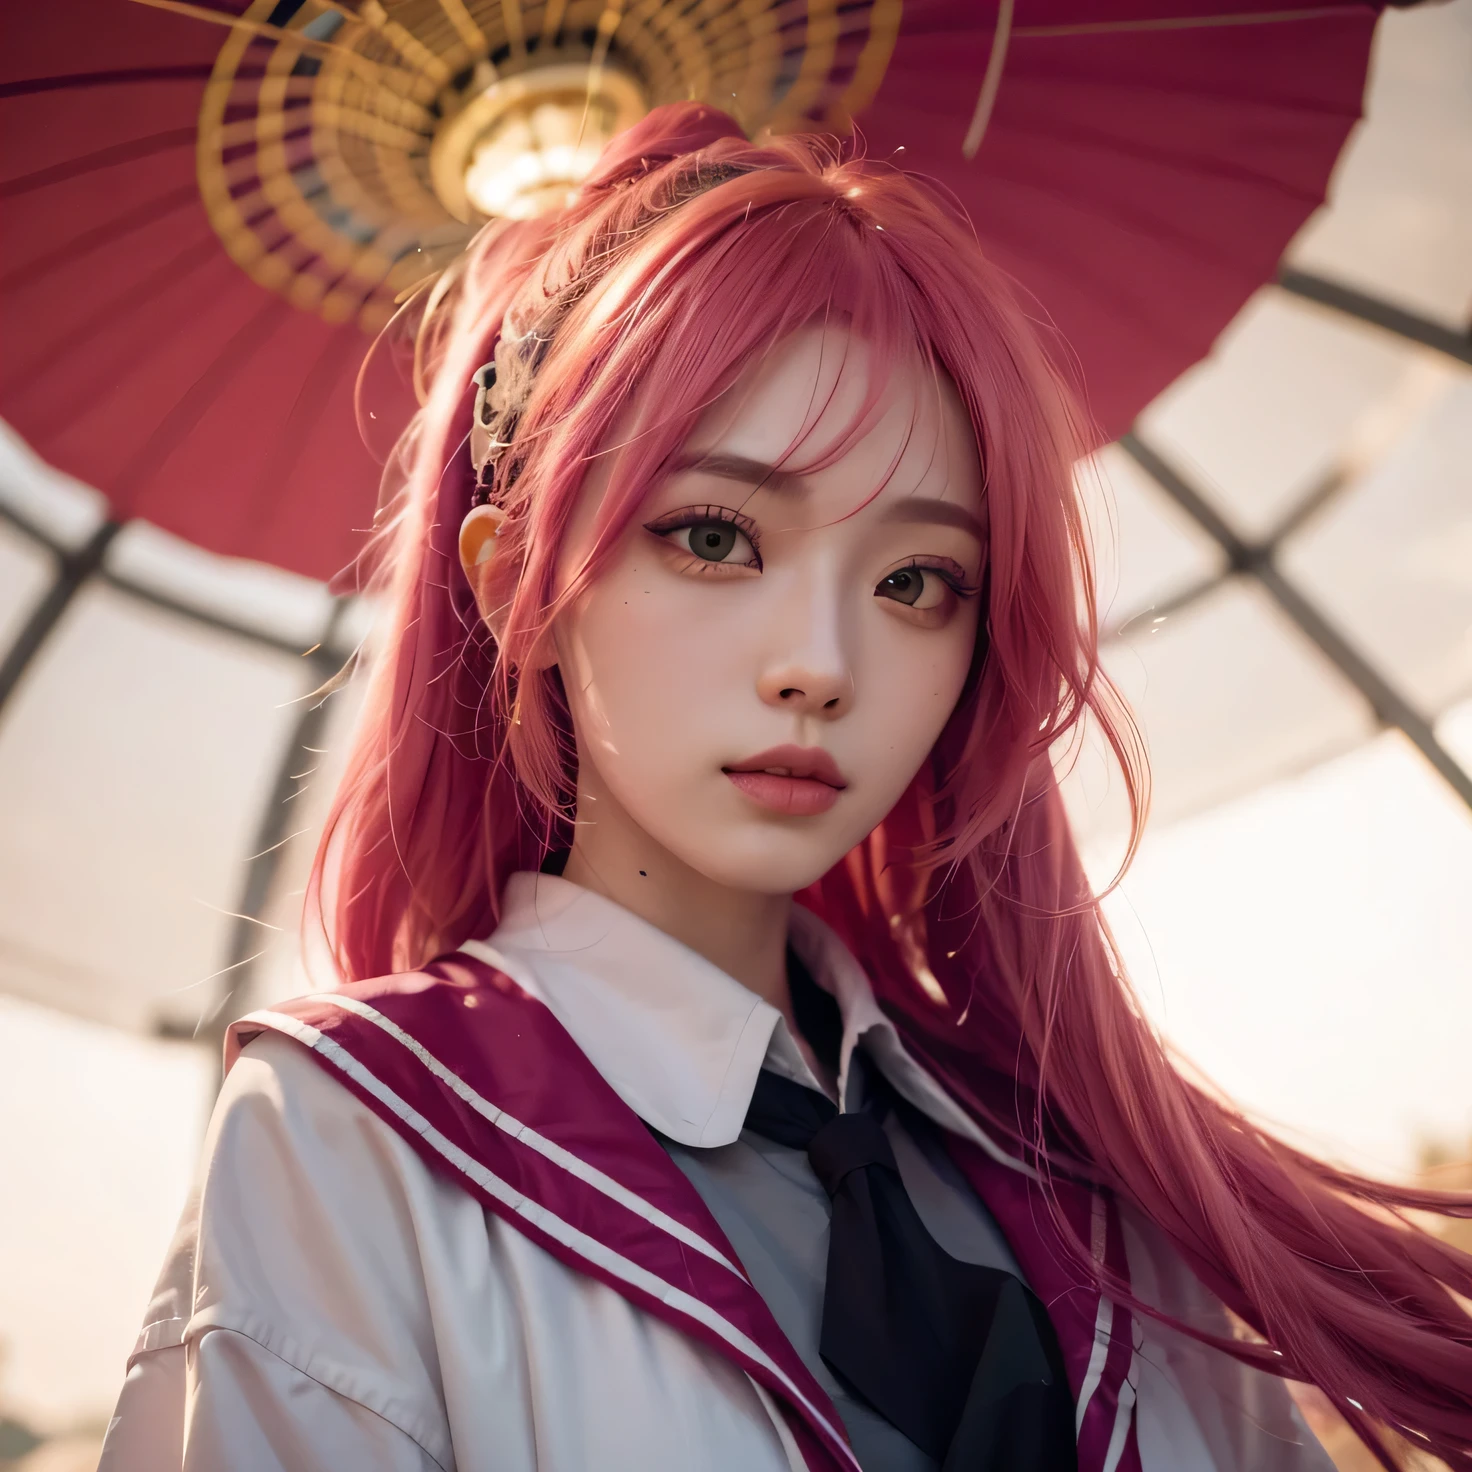 1 Mädchen,Kagura,lange Haare, gelbe und rosa Haare,70mm lens, Ultra-Detail, Realistisch